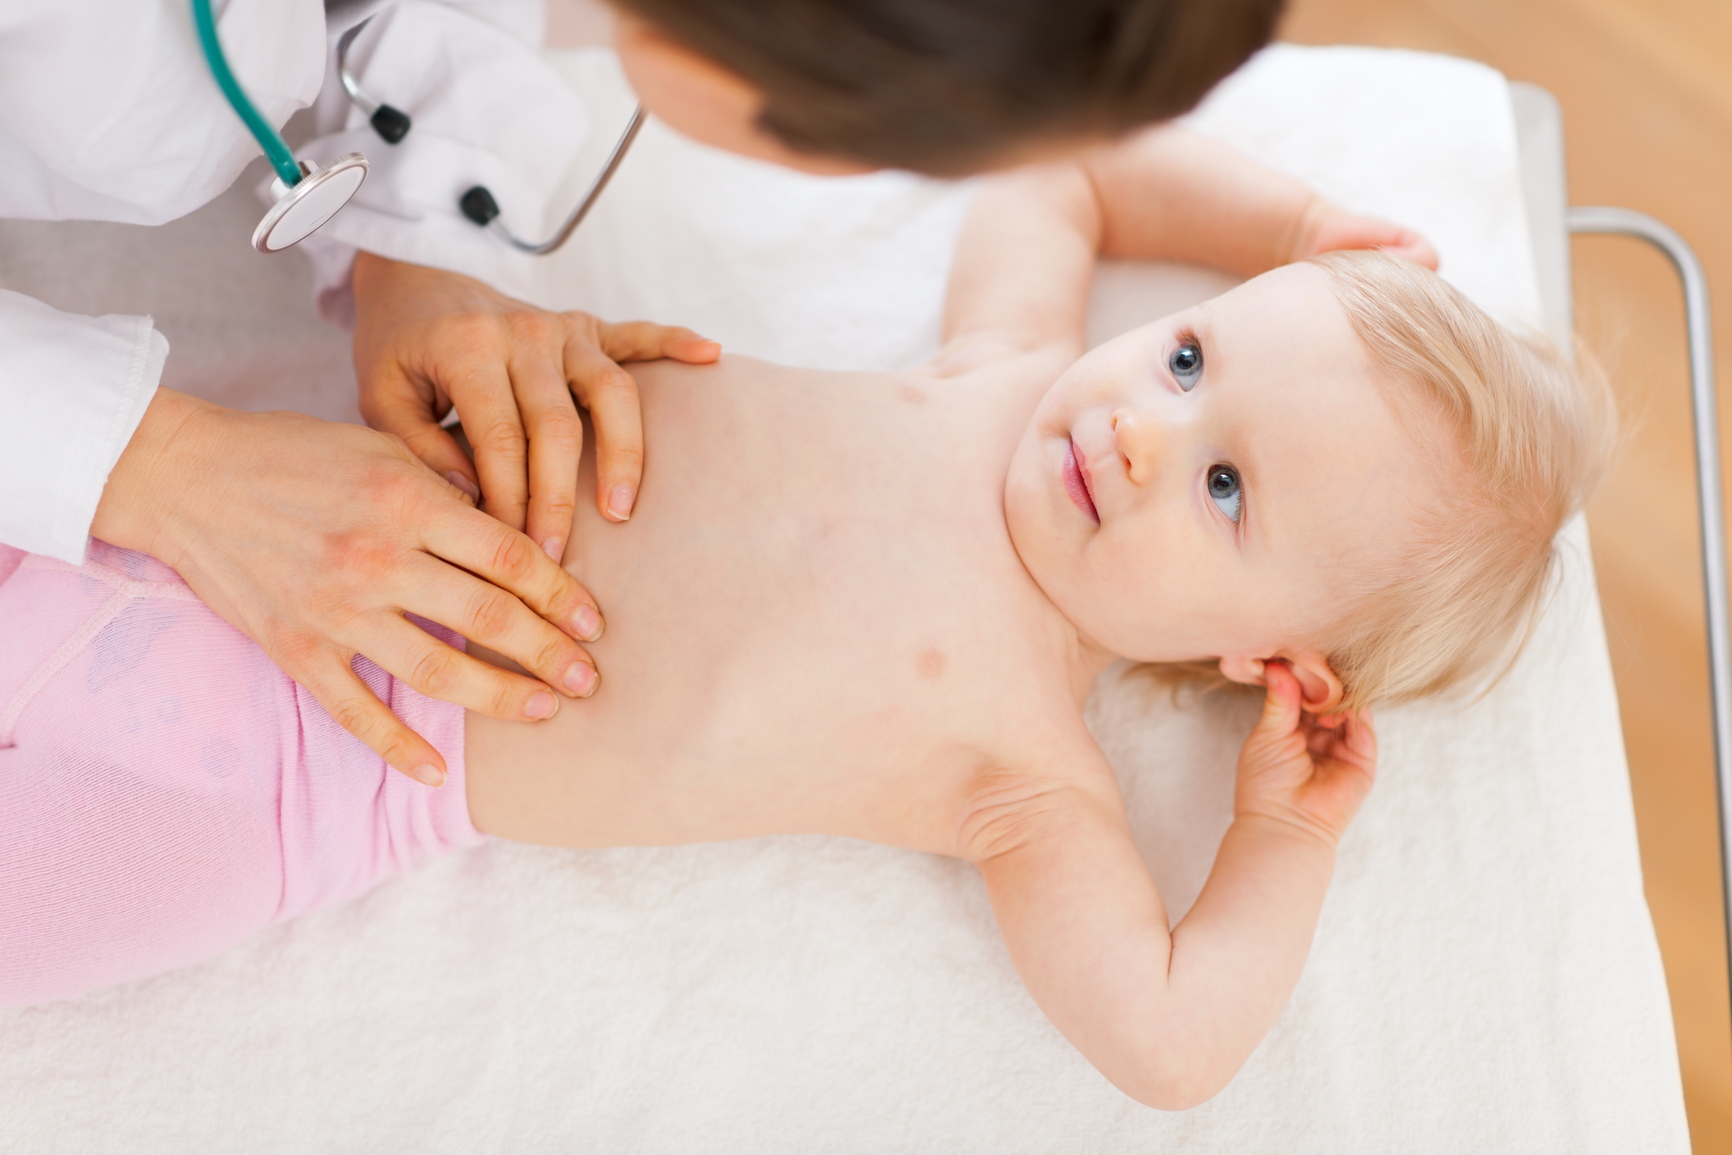 A child's abdomen being massaged